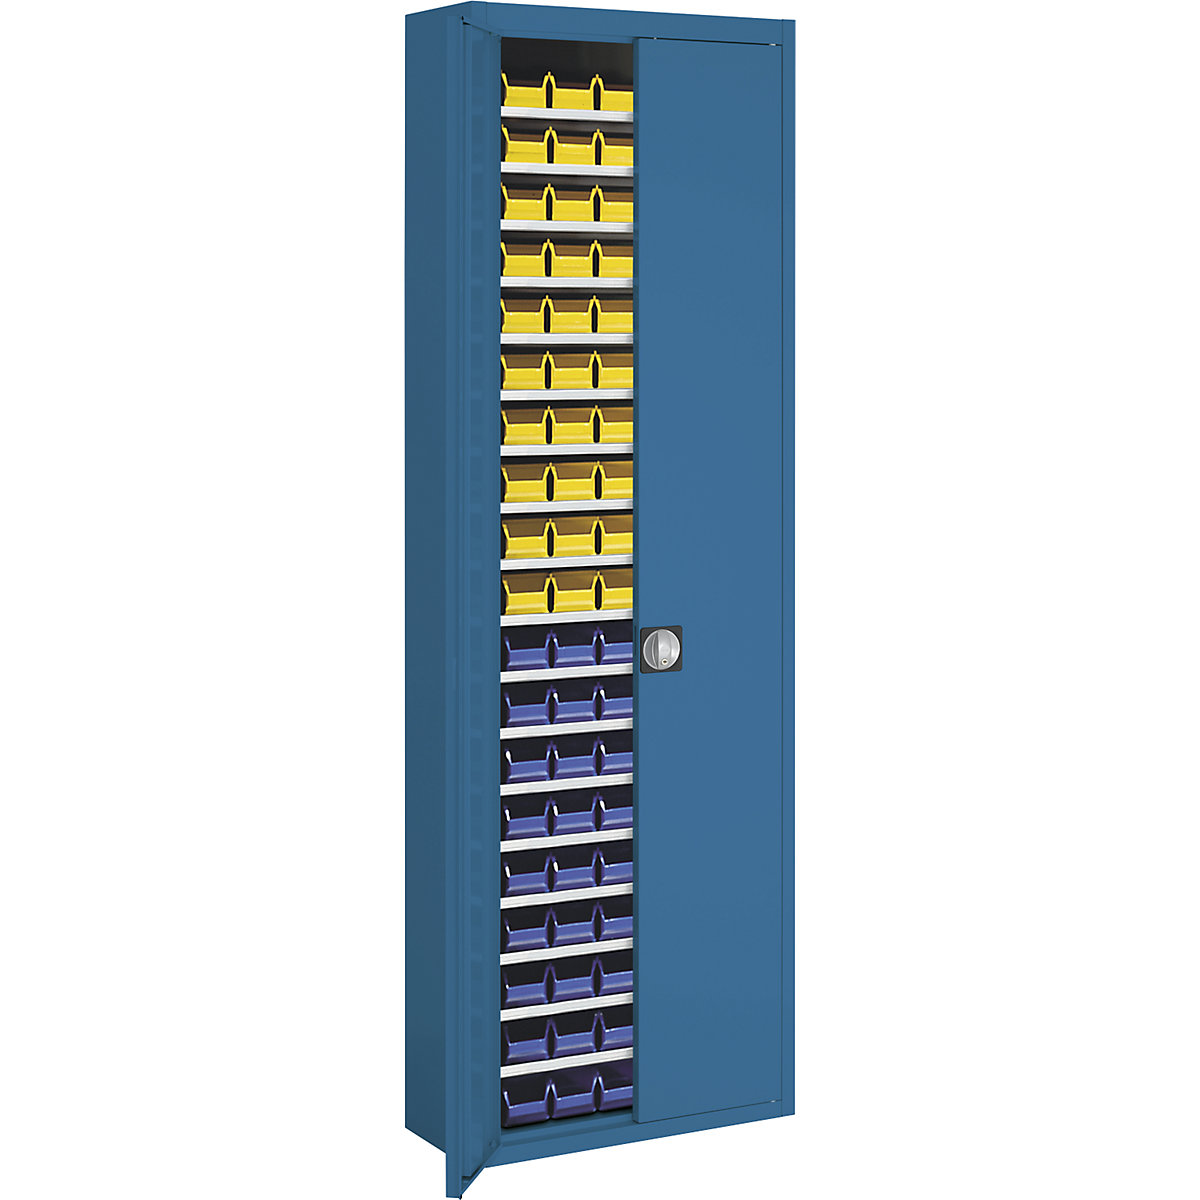 Armário de armazém com caixas de armazenagem à vista – mauser, AxLxP 2150 x 680 x 280 mm, duas cores, corpo em cinzento, portas em azul, 114 caixas-8